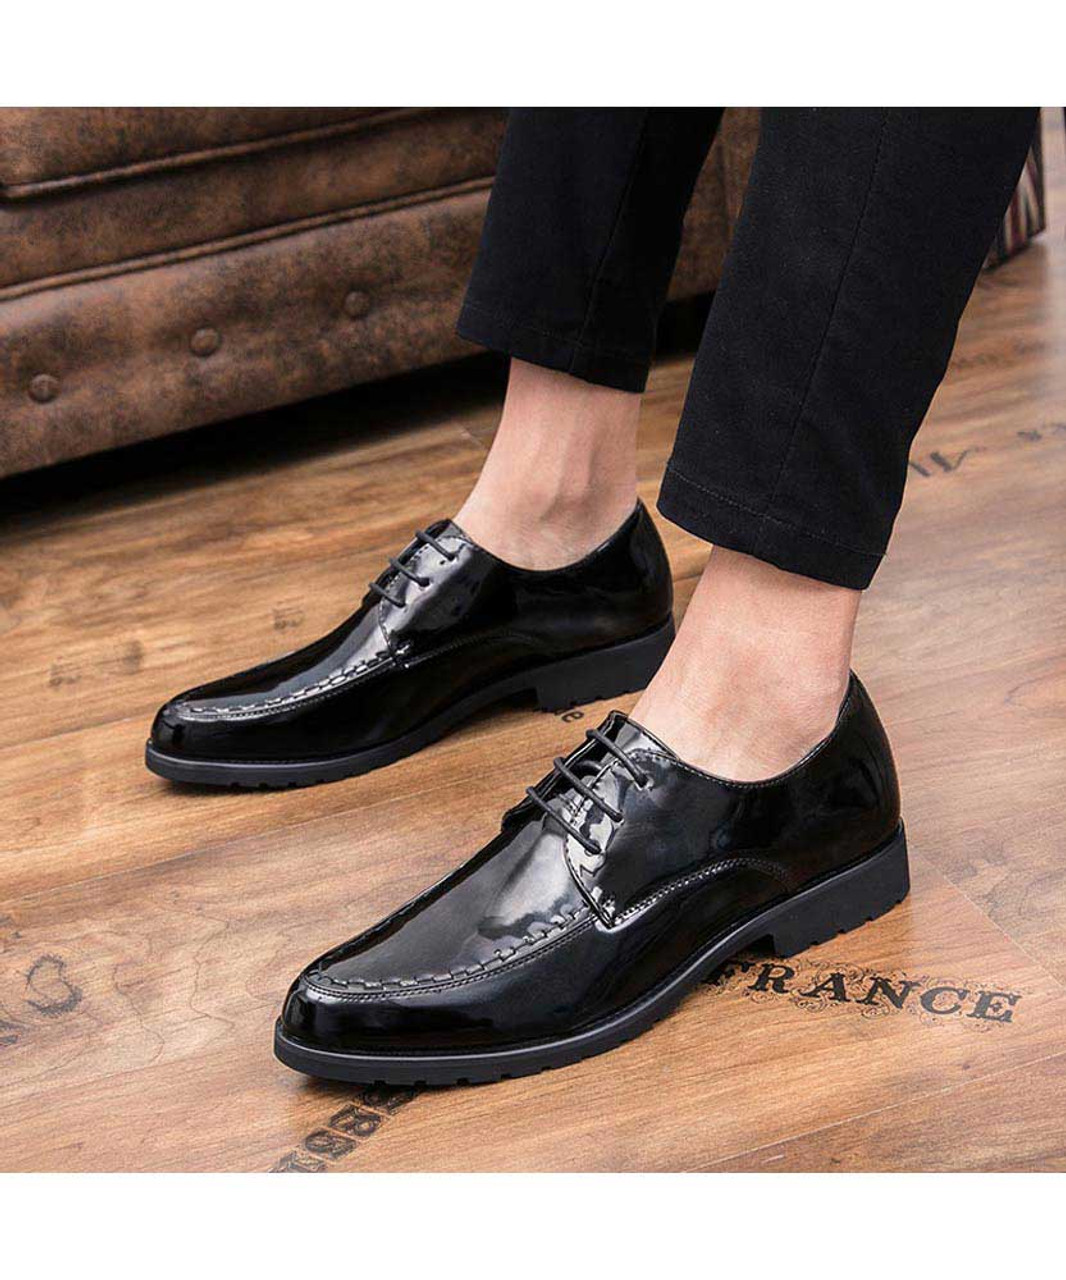 Black patent leather derby dress shoe point toe | Mens dress shoes ...